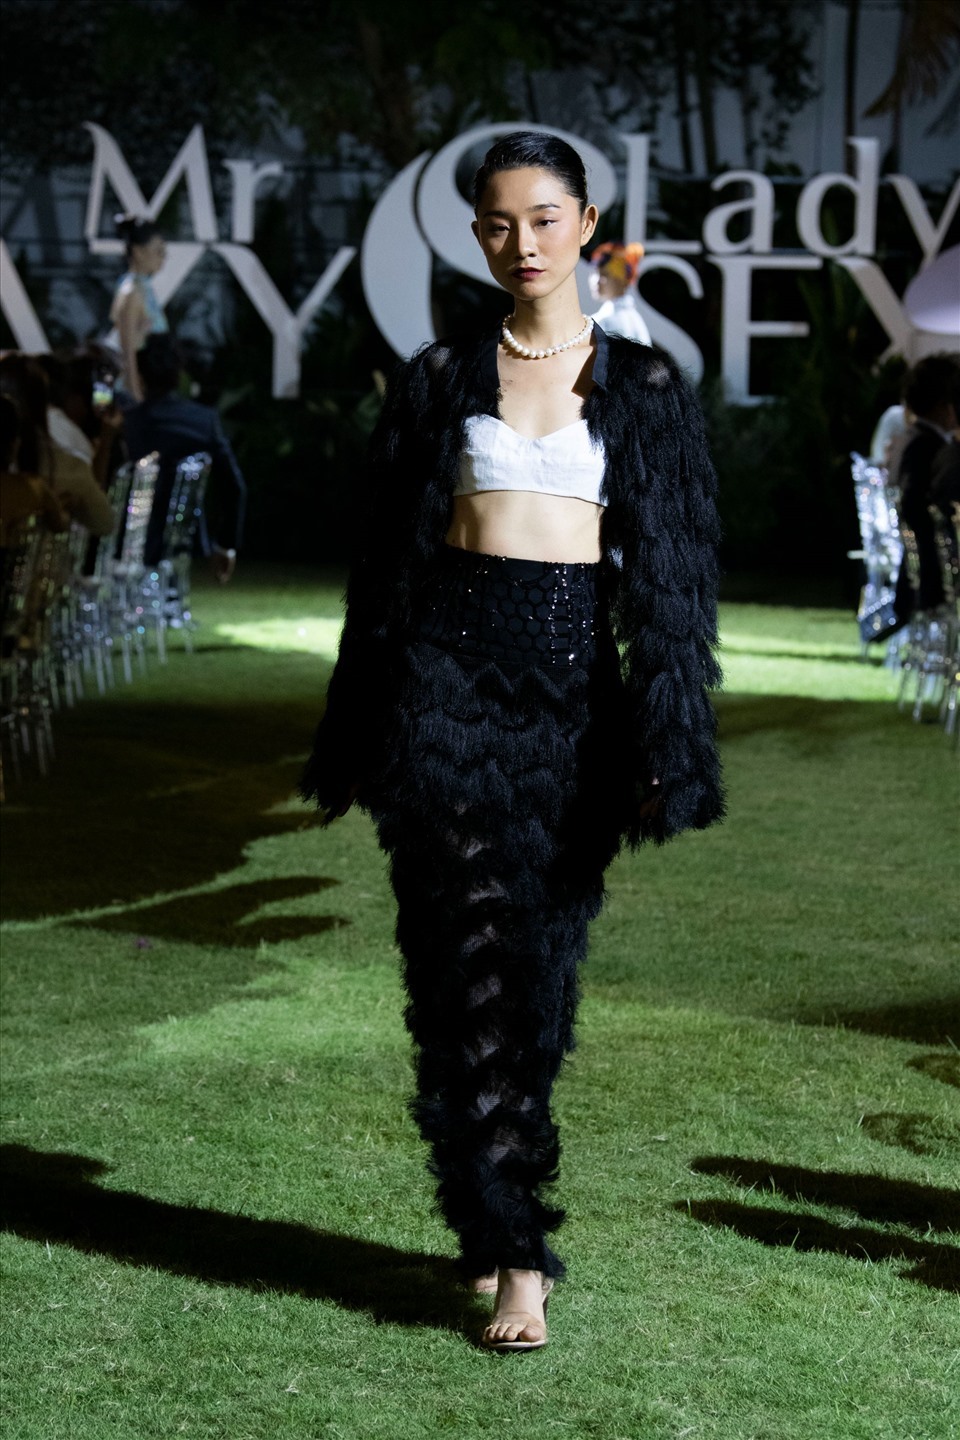 Dàn người mẫu trình diễn bộ sưu tập “Being Crazy – Being Sexy” trên nền nhạc đắm say, nồng nàn của nghệ sĩ piano Tuấn Mạnh và nữ nghệ sĩ violin SMI.